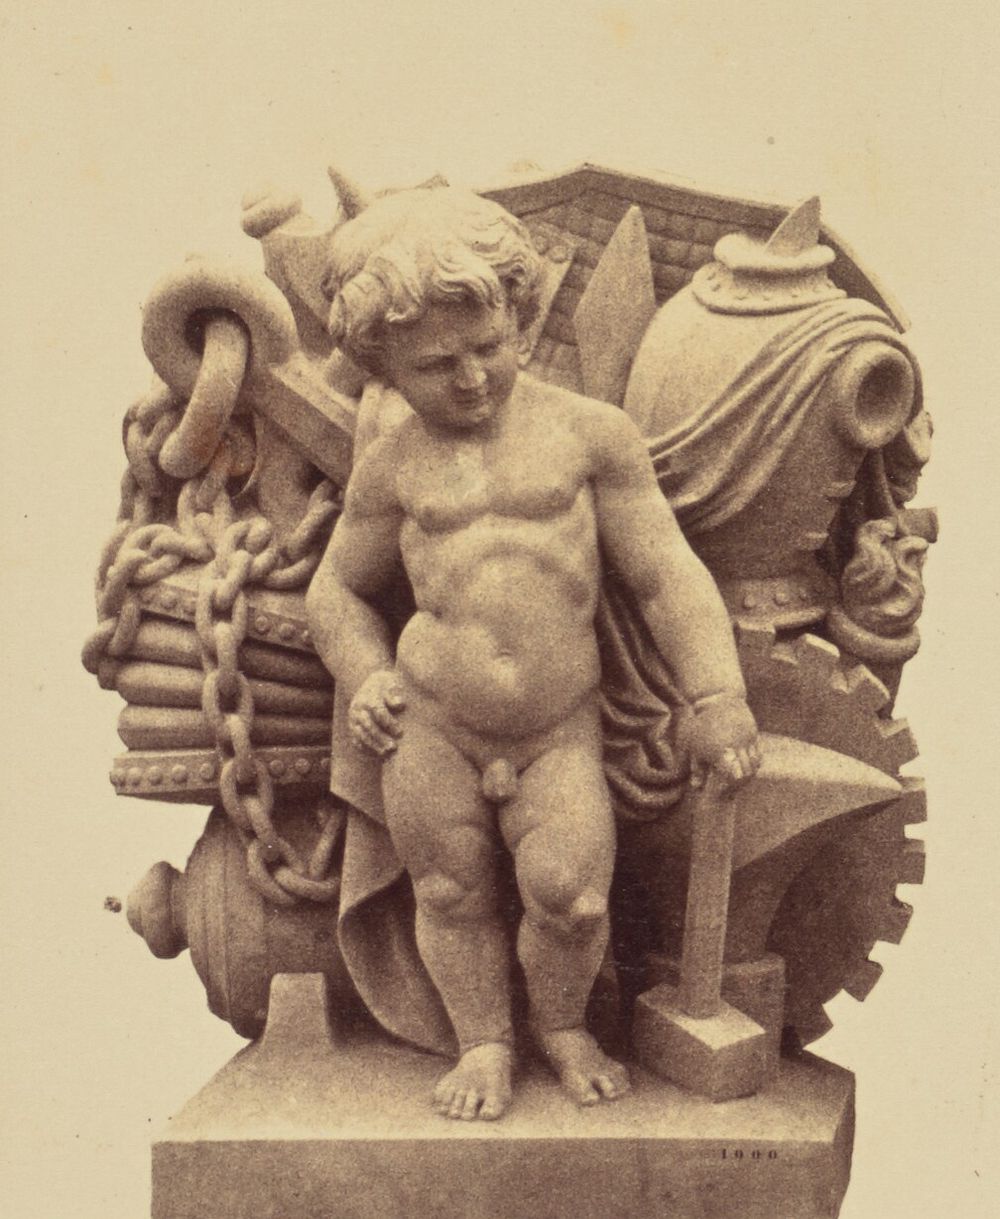 "La Force", Sculpture by Charles Auguste Lebourg, Decoration of the Louvre, Paris by Édouard Baldus